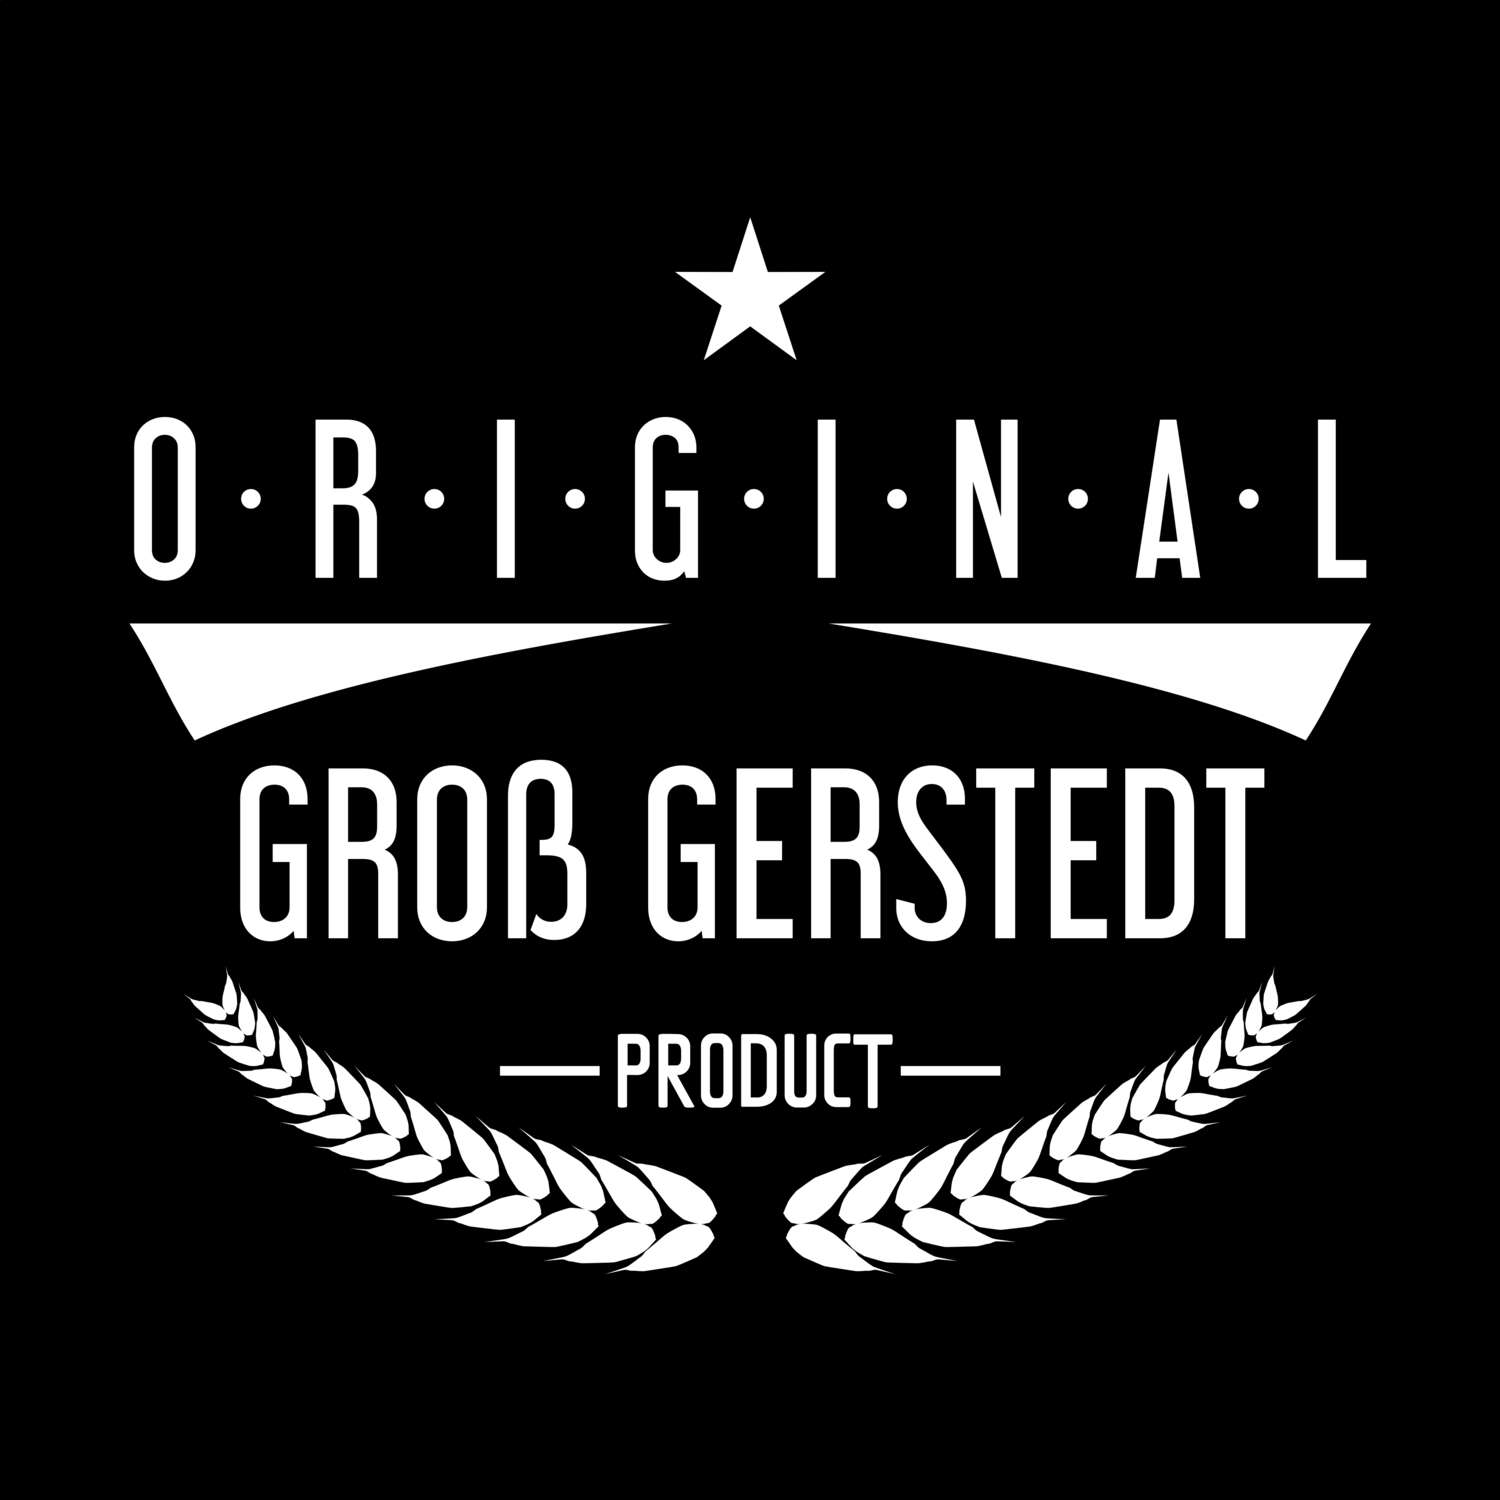 Groß Gerstedt T-Shirt »Original Product«